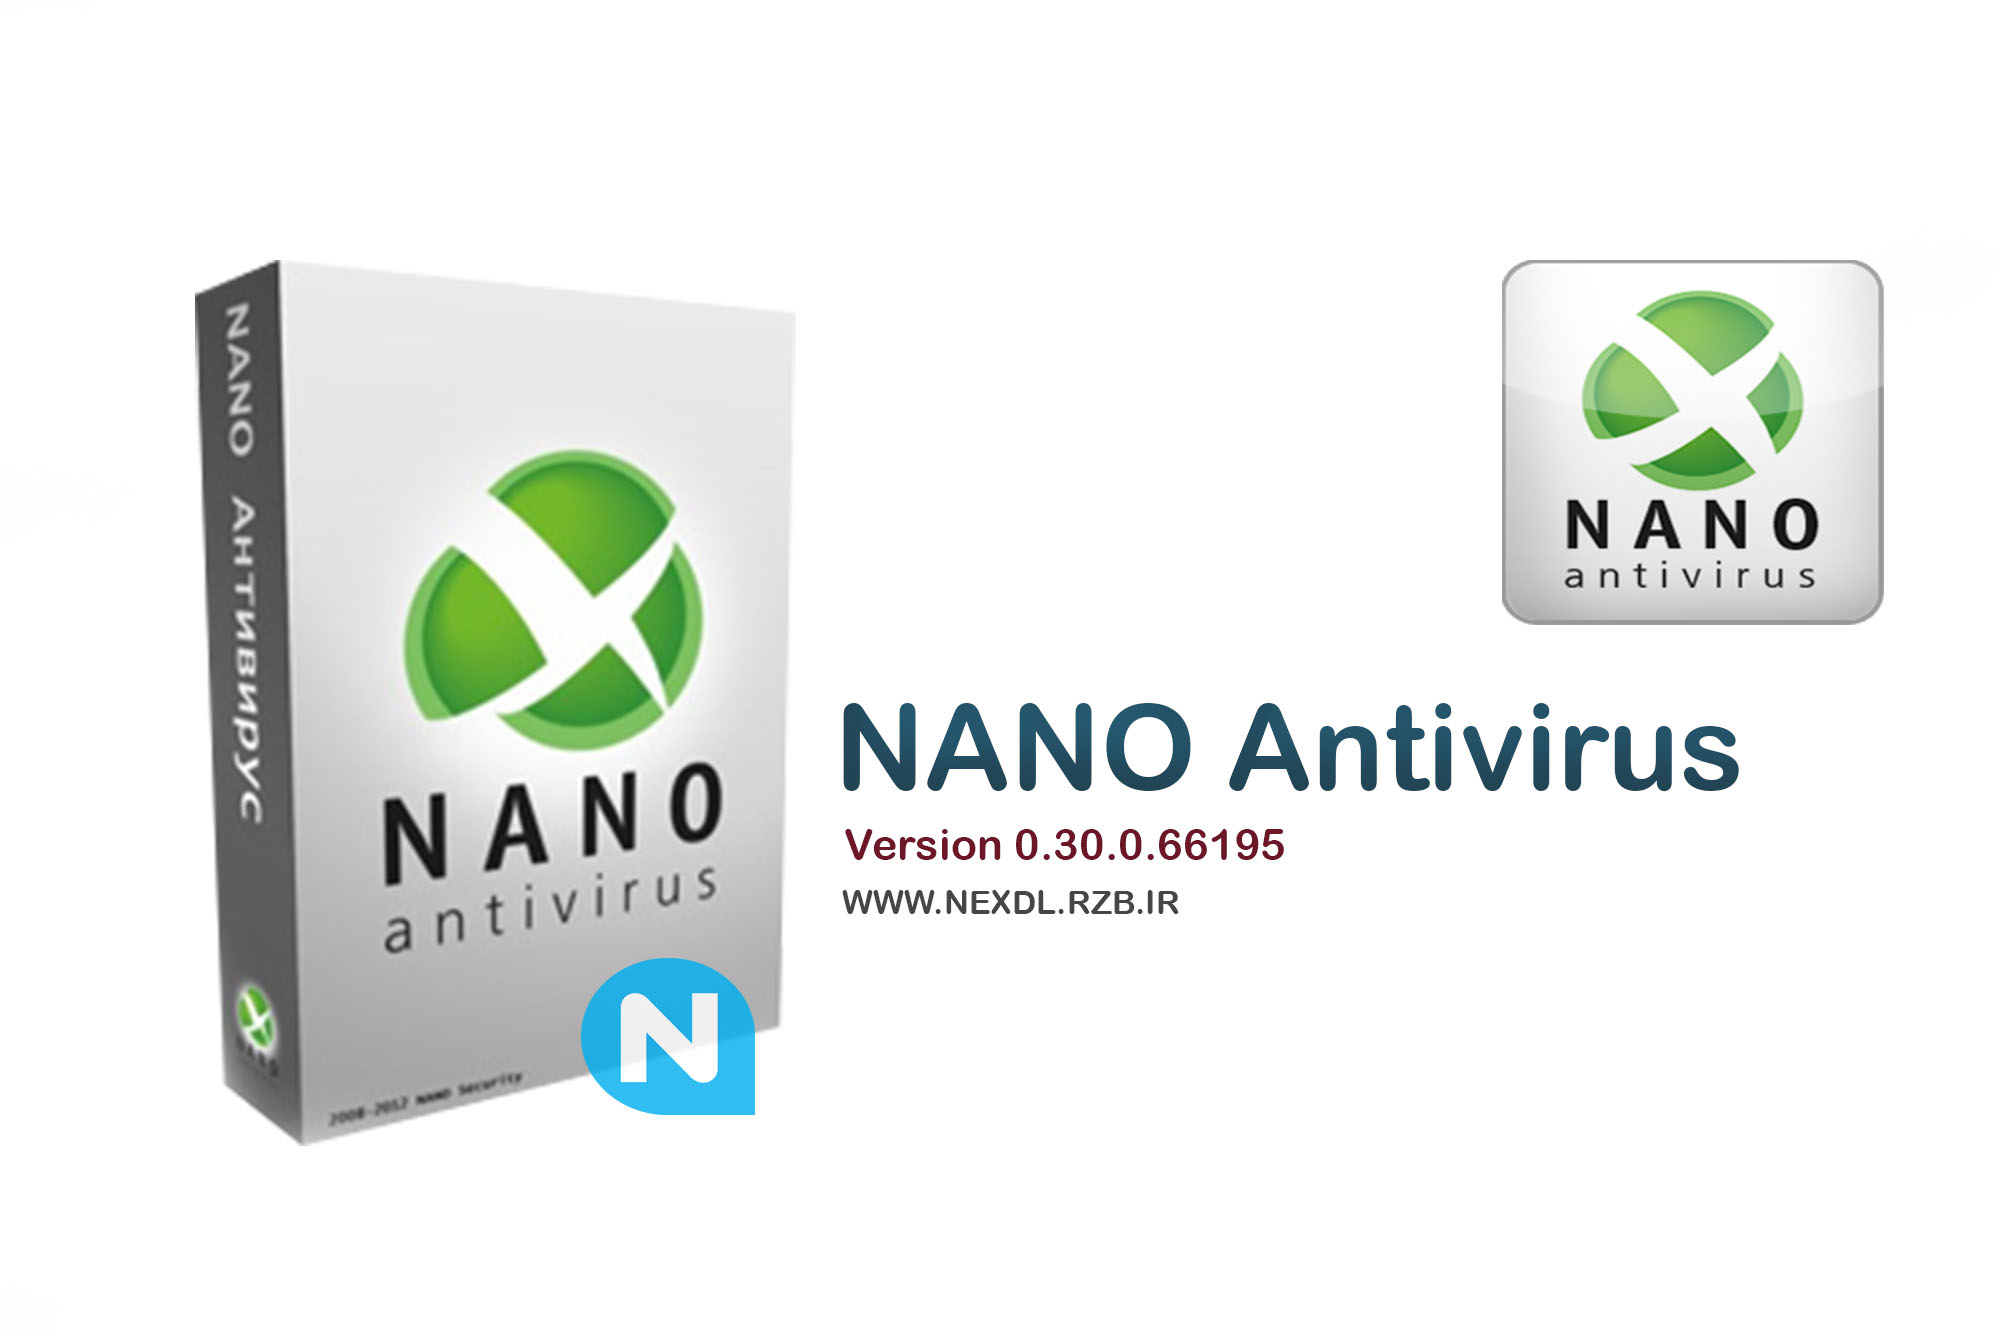 دانلود NANO Antivirus 0.30.0.66195